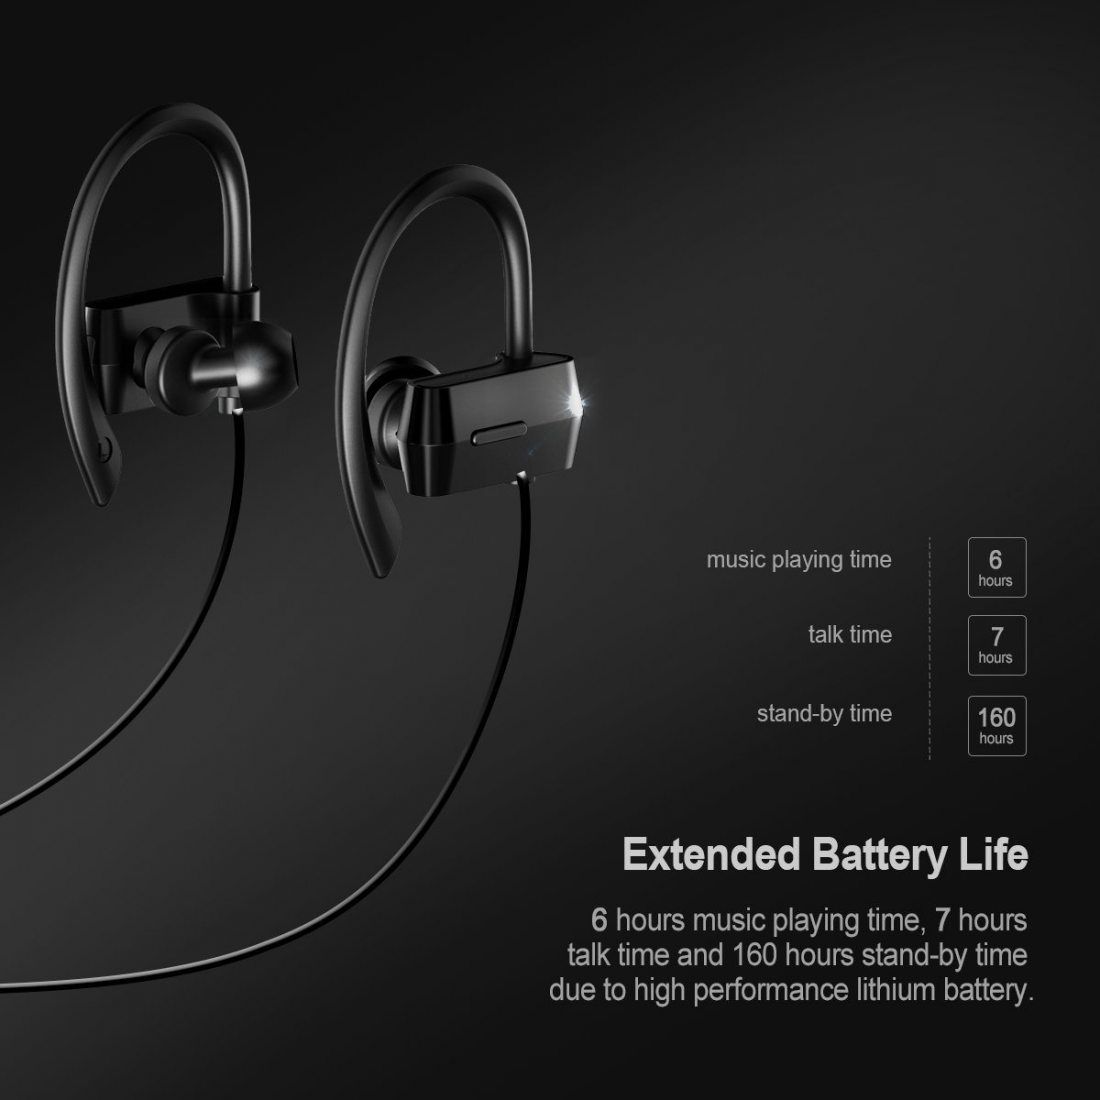 Écouteurs Bluetooth 4.1+CSR Mpow Écouteur Bluetooth Sans Fil Oreillette Bluetooth Sport Intra Auriculaire Stéréo Audio Casque